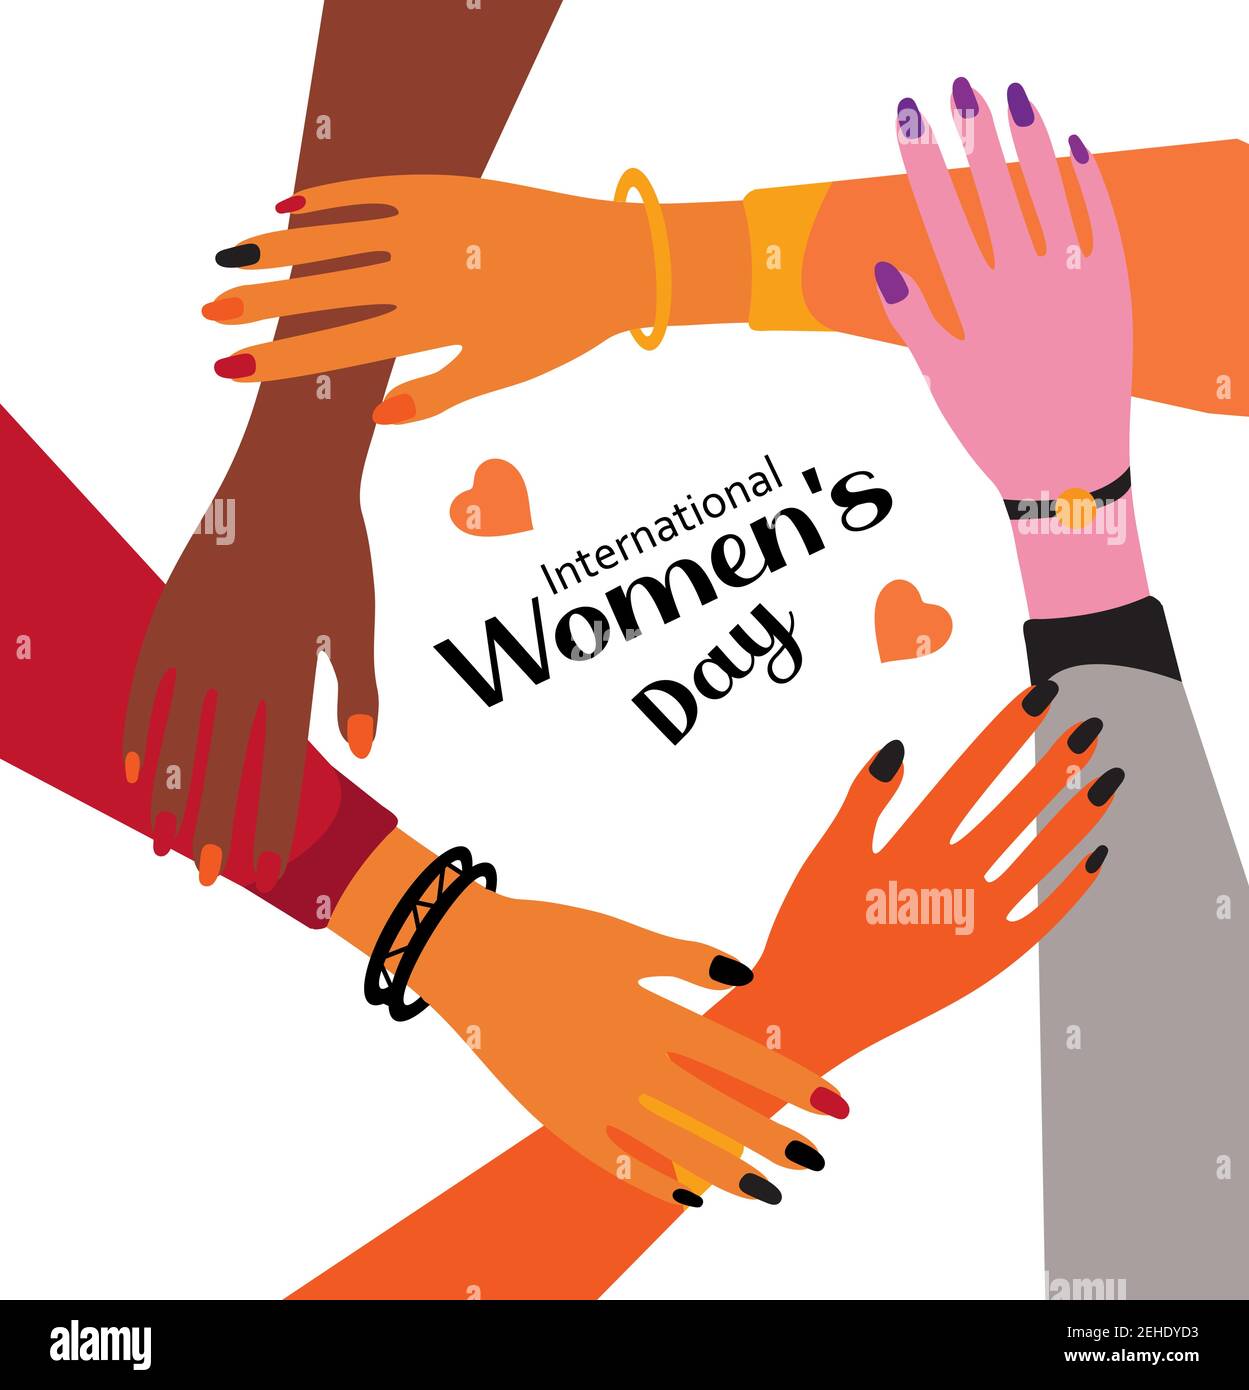 Internationaler Frauentag 8. März. Feminismus weibliche Hände zusammen Grußkarte. Power für Mädchen. Kampf für Freiheit, Unabhängigkeit, Gleichheit. Vektor Stock Vektor